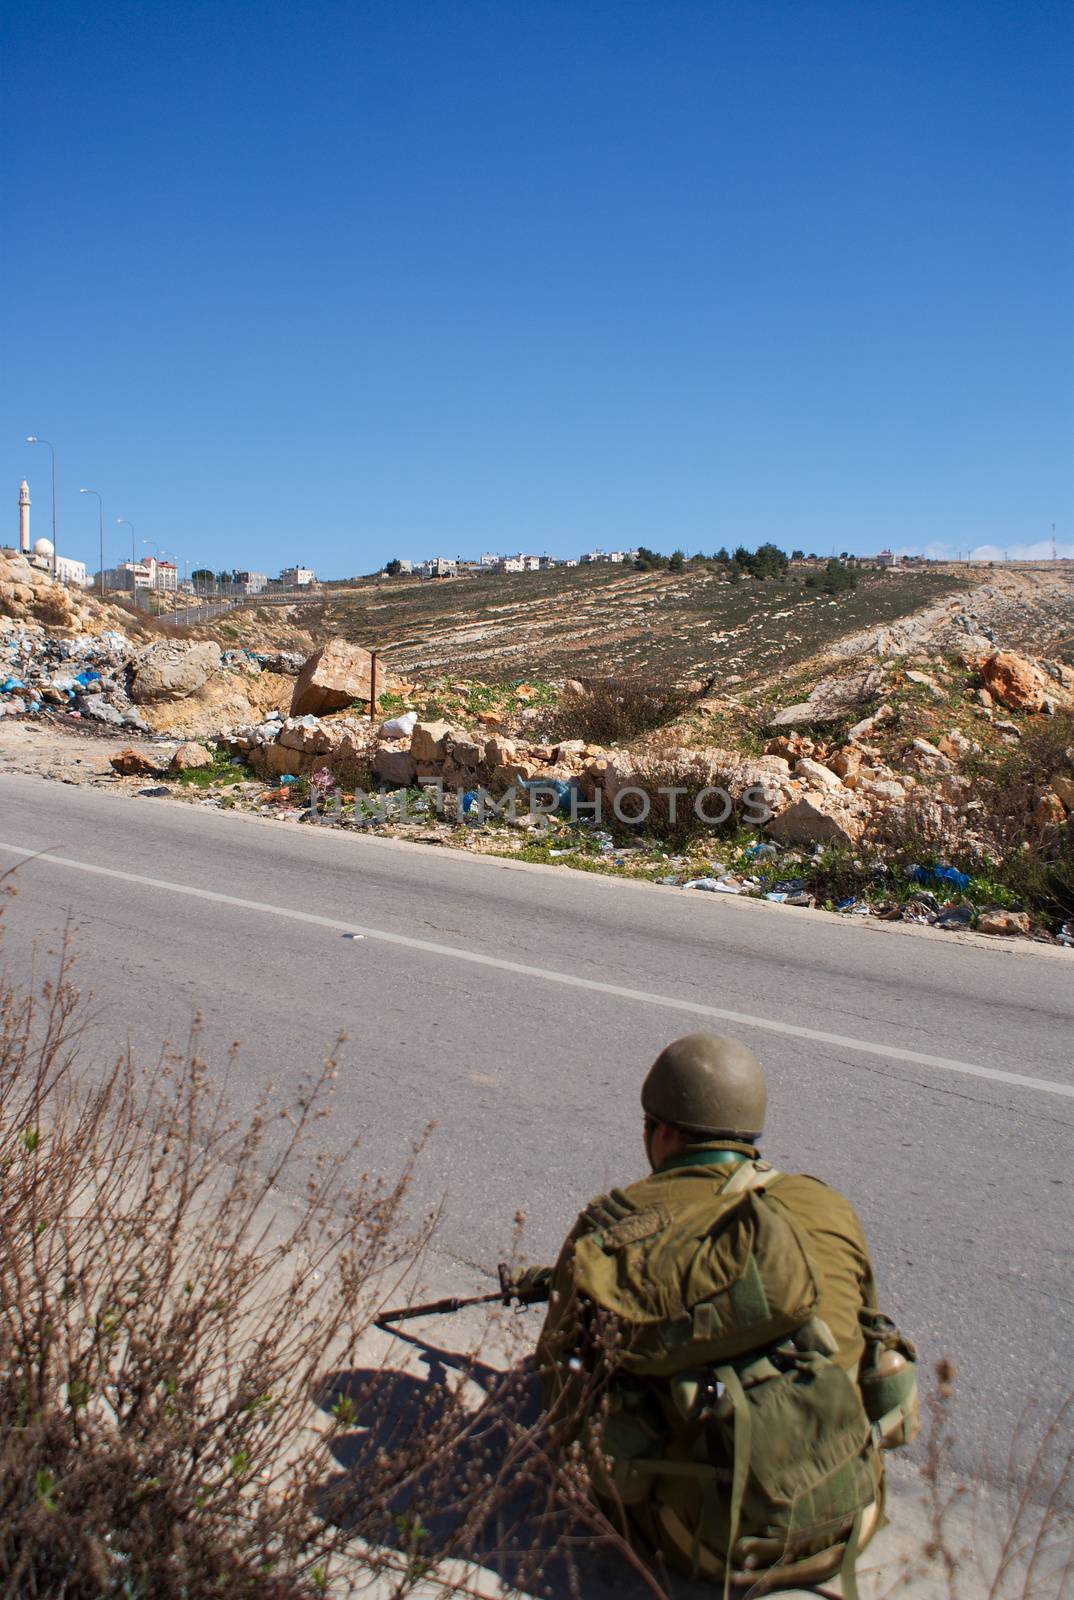 Israeli soldiers patrol in palestinian village by javax